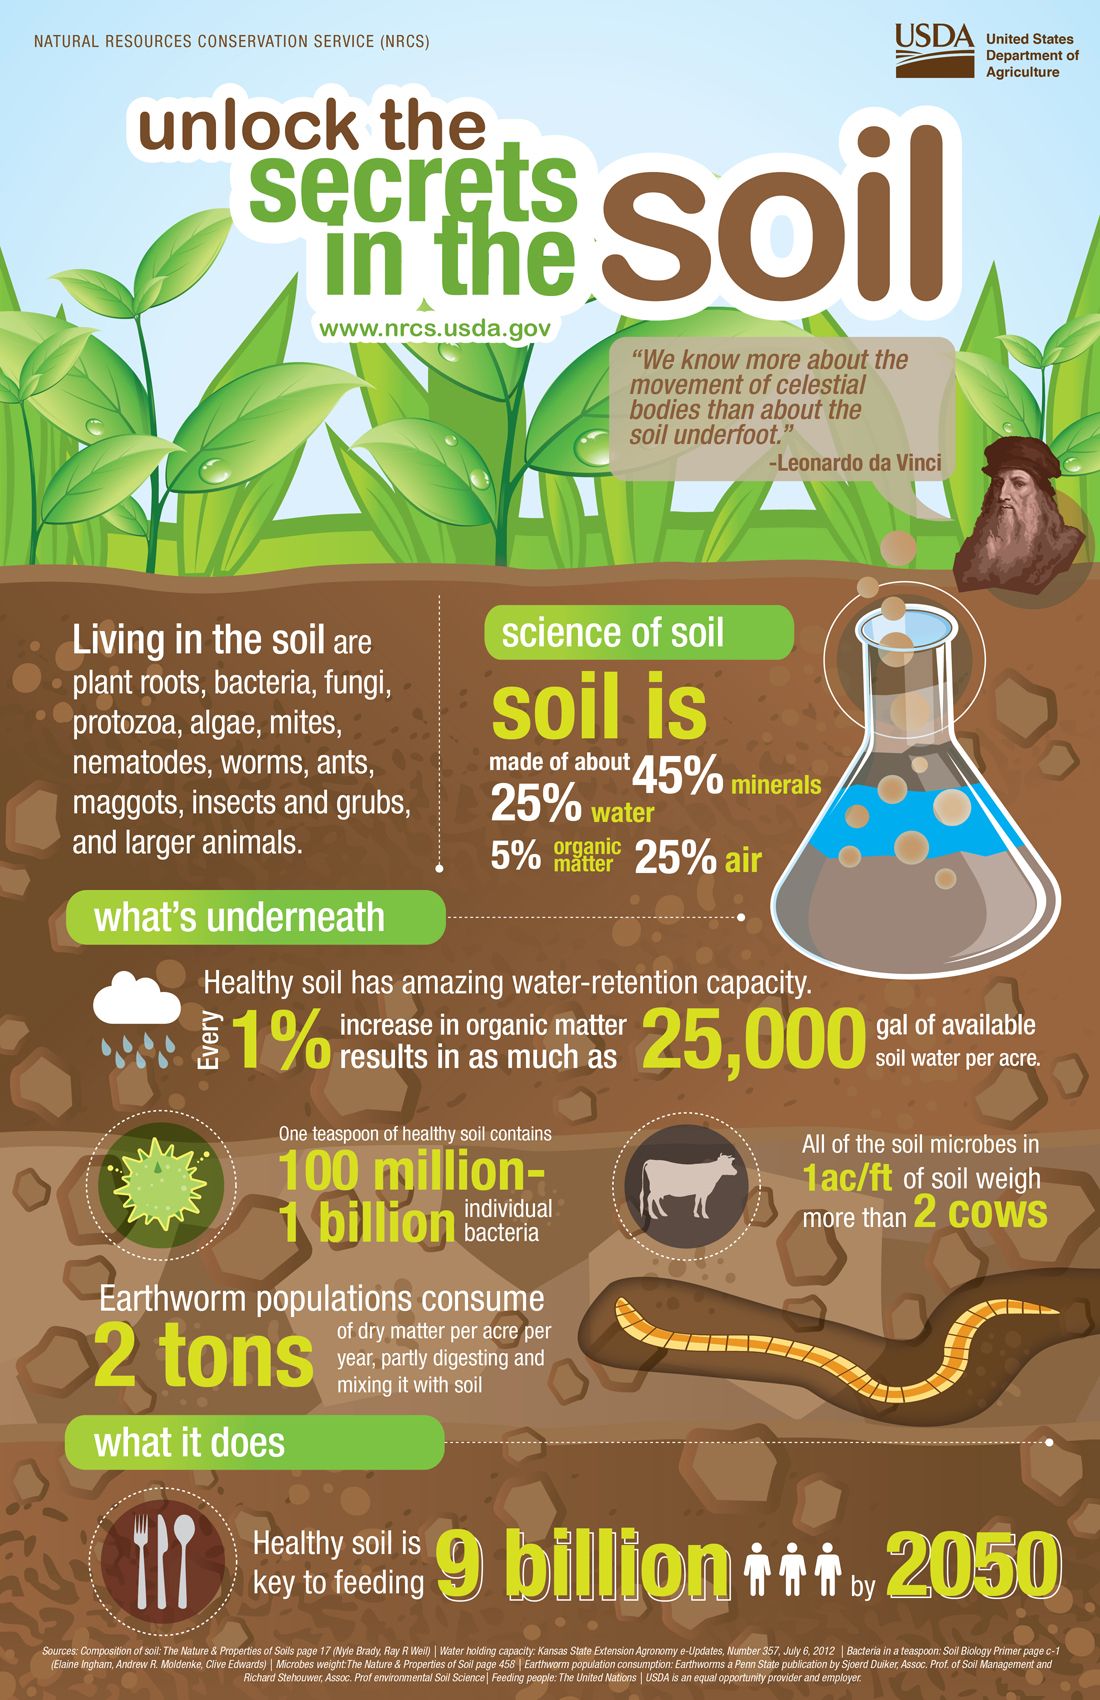 Unlock the Secrets in the Soil - Regeneration International